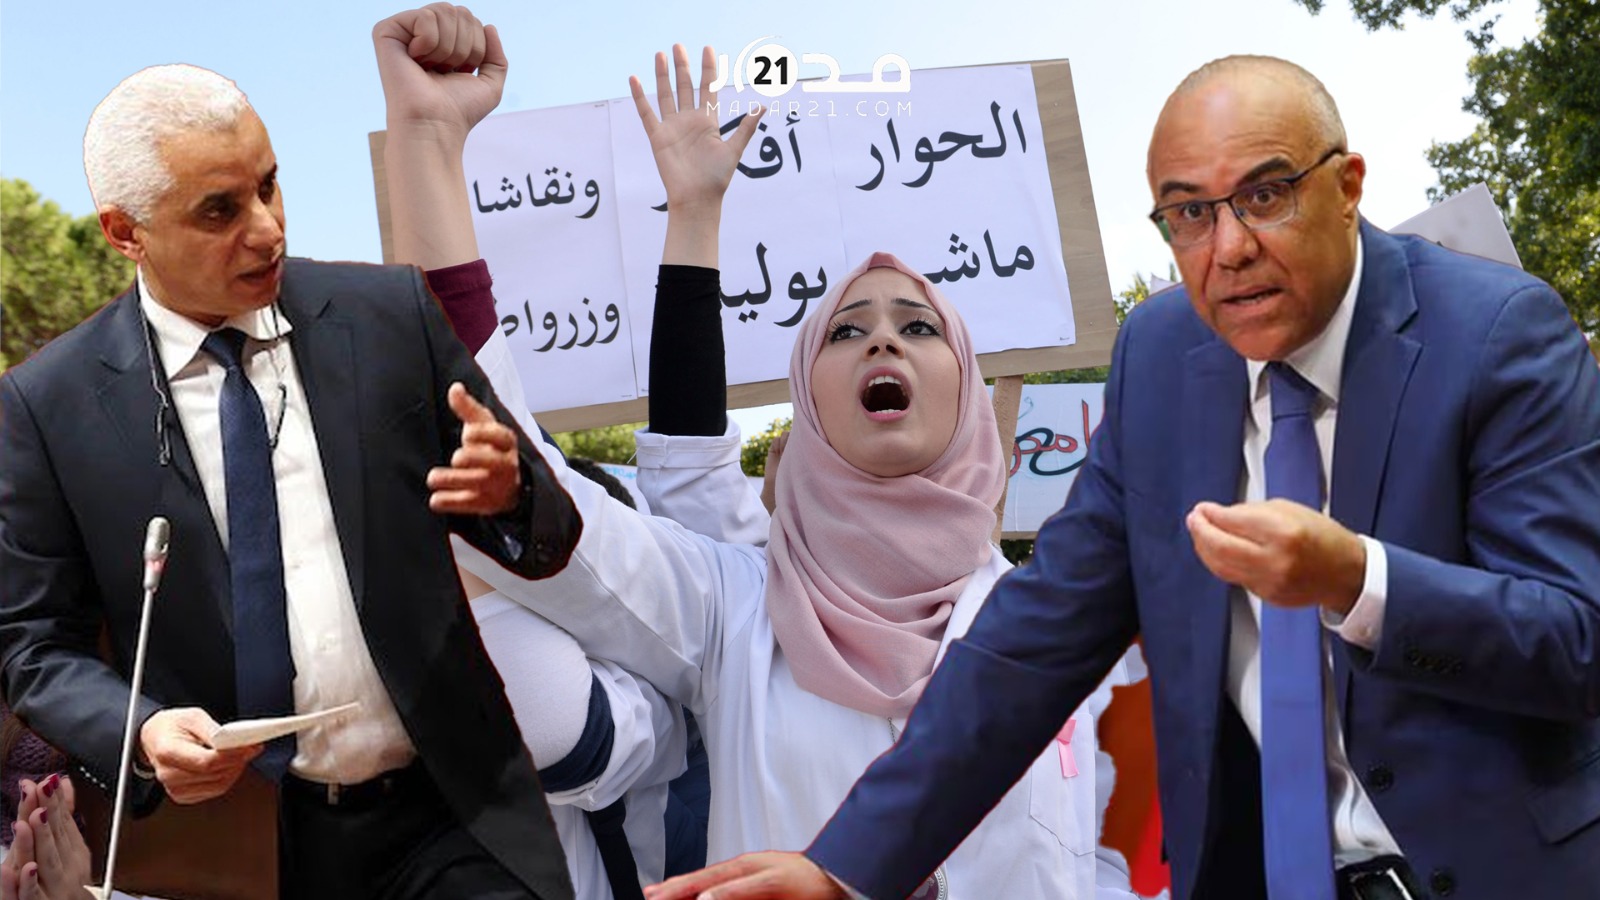 احتجاجات طلبة الطب.. أزمة مستمرة وتتمدد ومستقبل مجهول لـ”أطباء الغد”